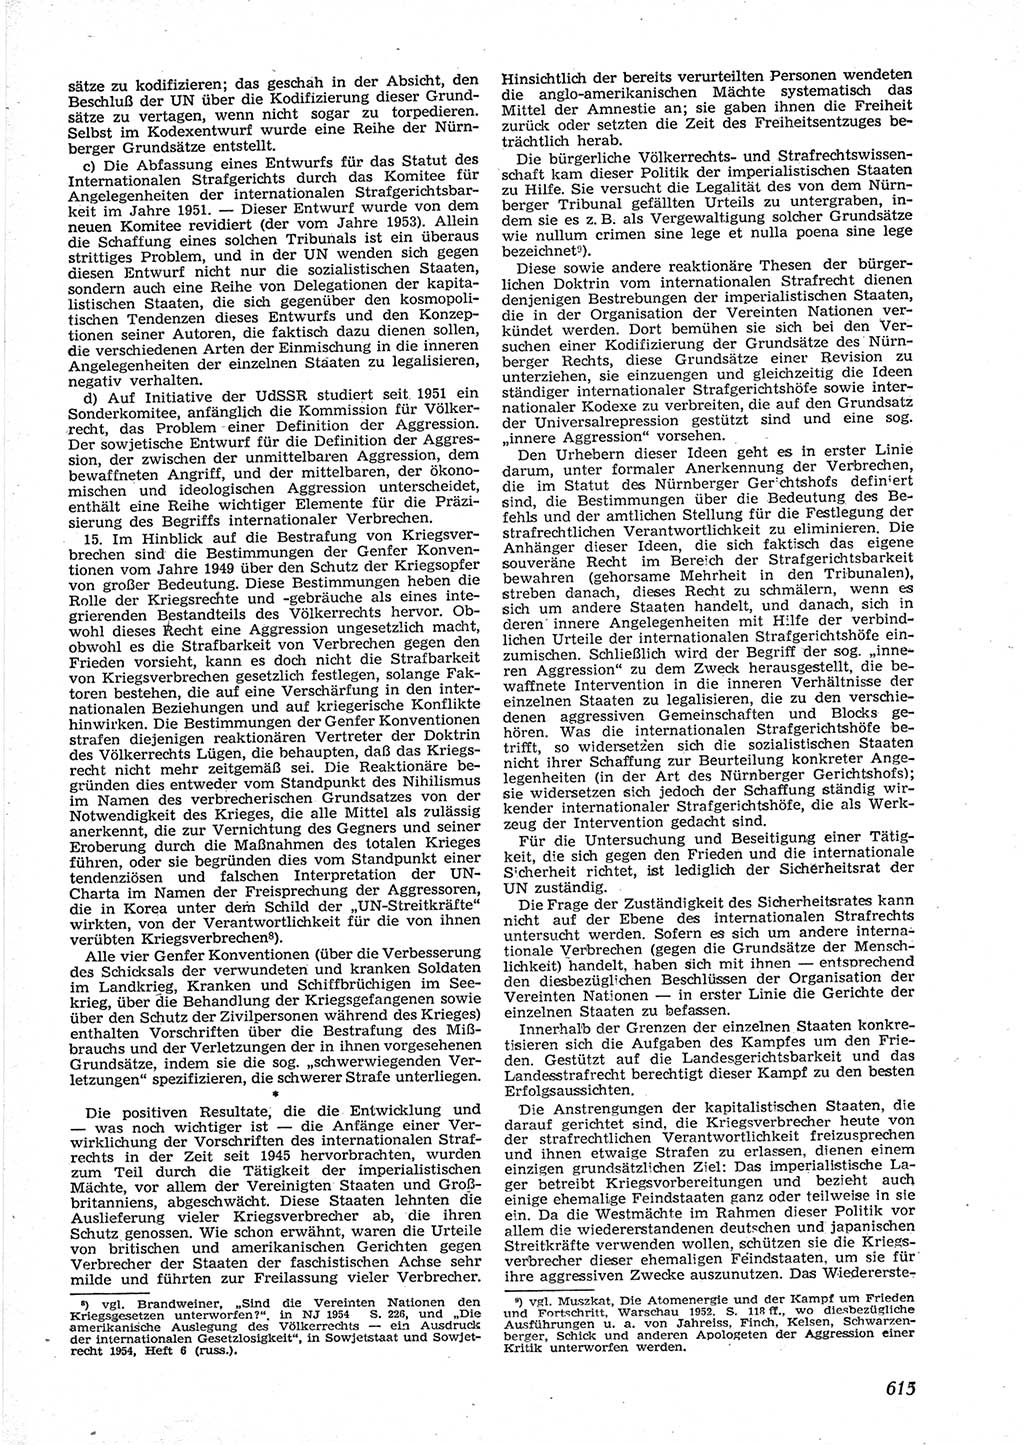 Neue Justiz (NJ), Zeitschrift für Recht und Rechtswissenschaft [Deutsche Demokratische Republik (DDR)], 9. Jahrgang 1955, Seite 615 (NJ DDR 1955, S. 615)